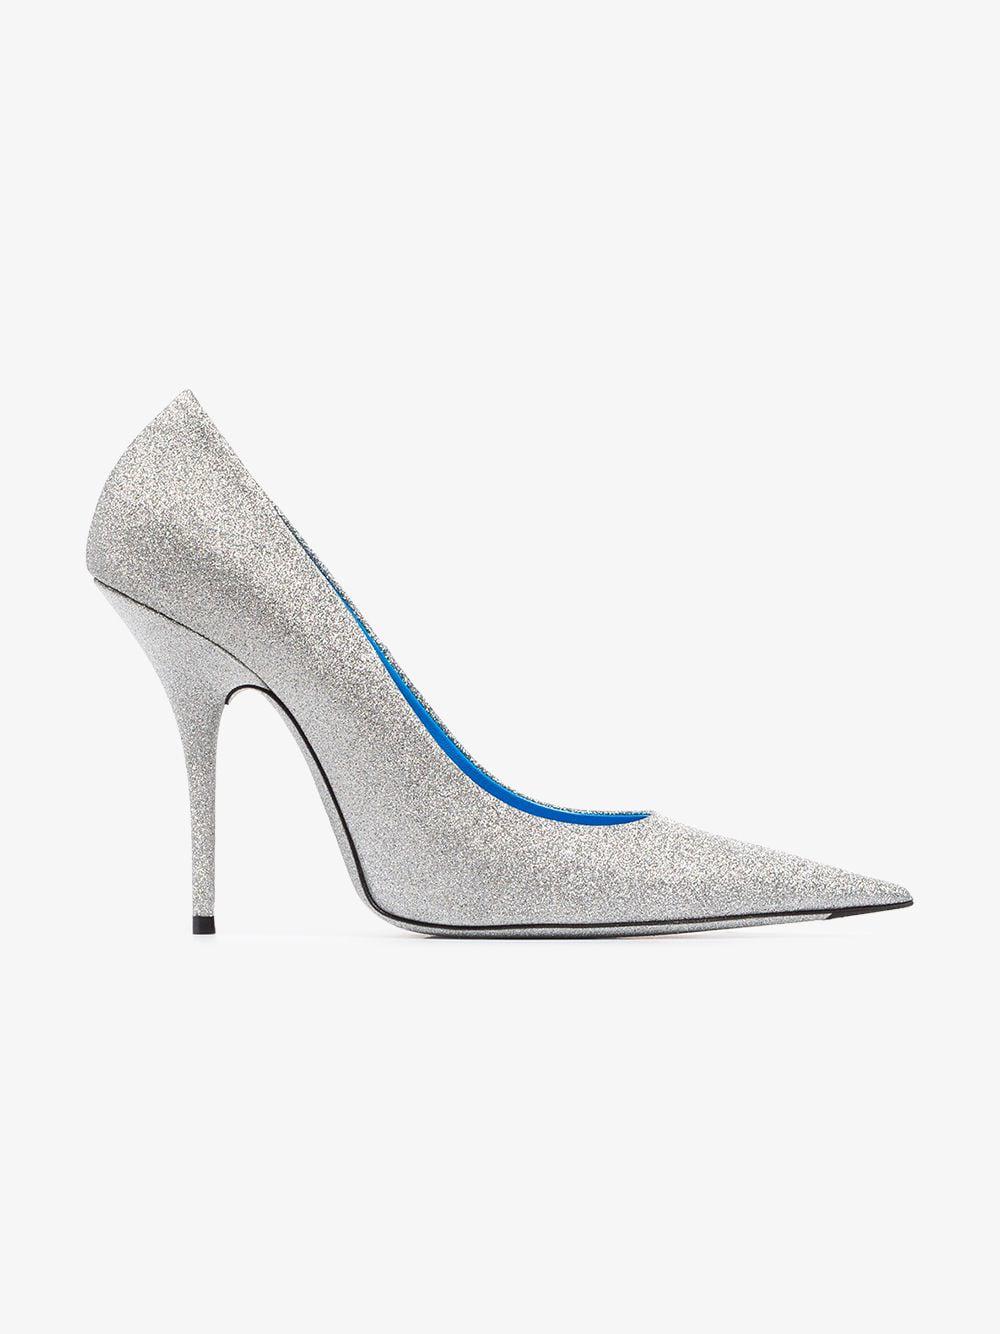 balenciaga silver heels